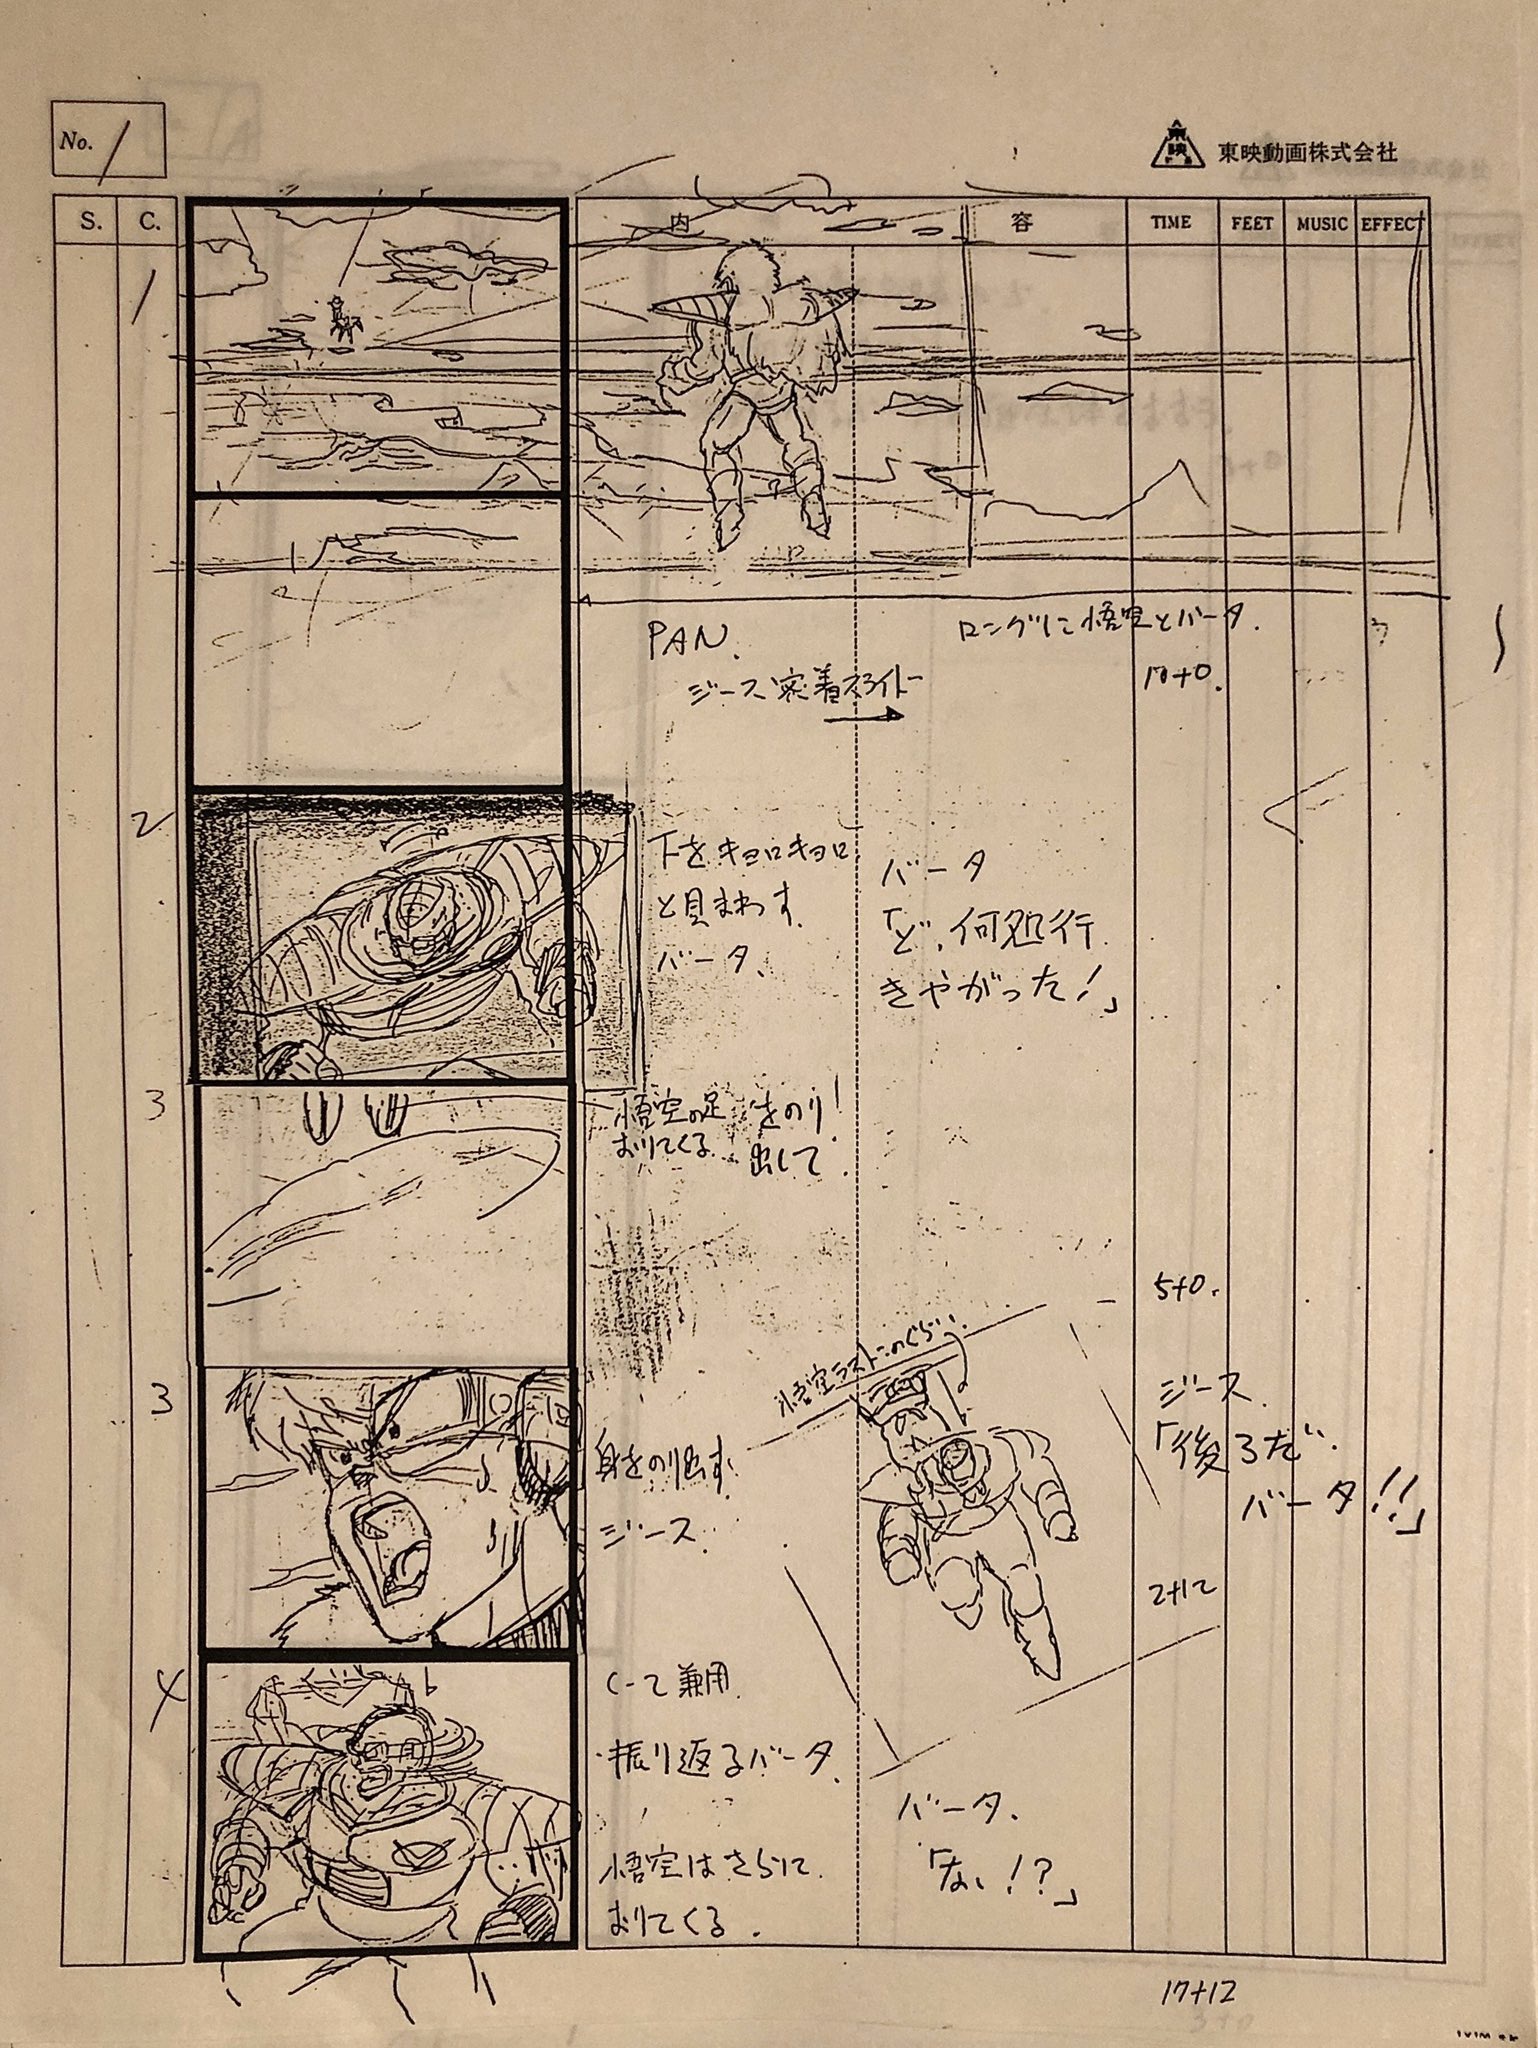 『东映动画』制作动画《龙珠z》第68集《基纽队长出战》分镜设计台本